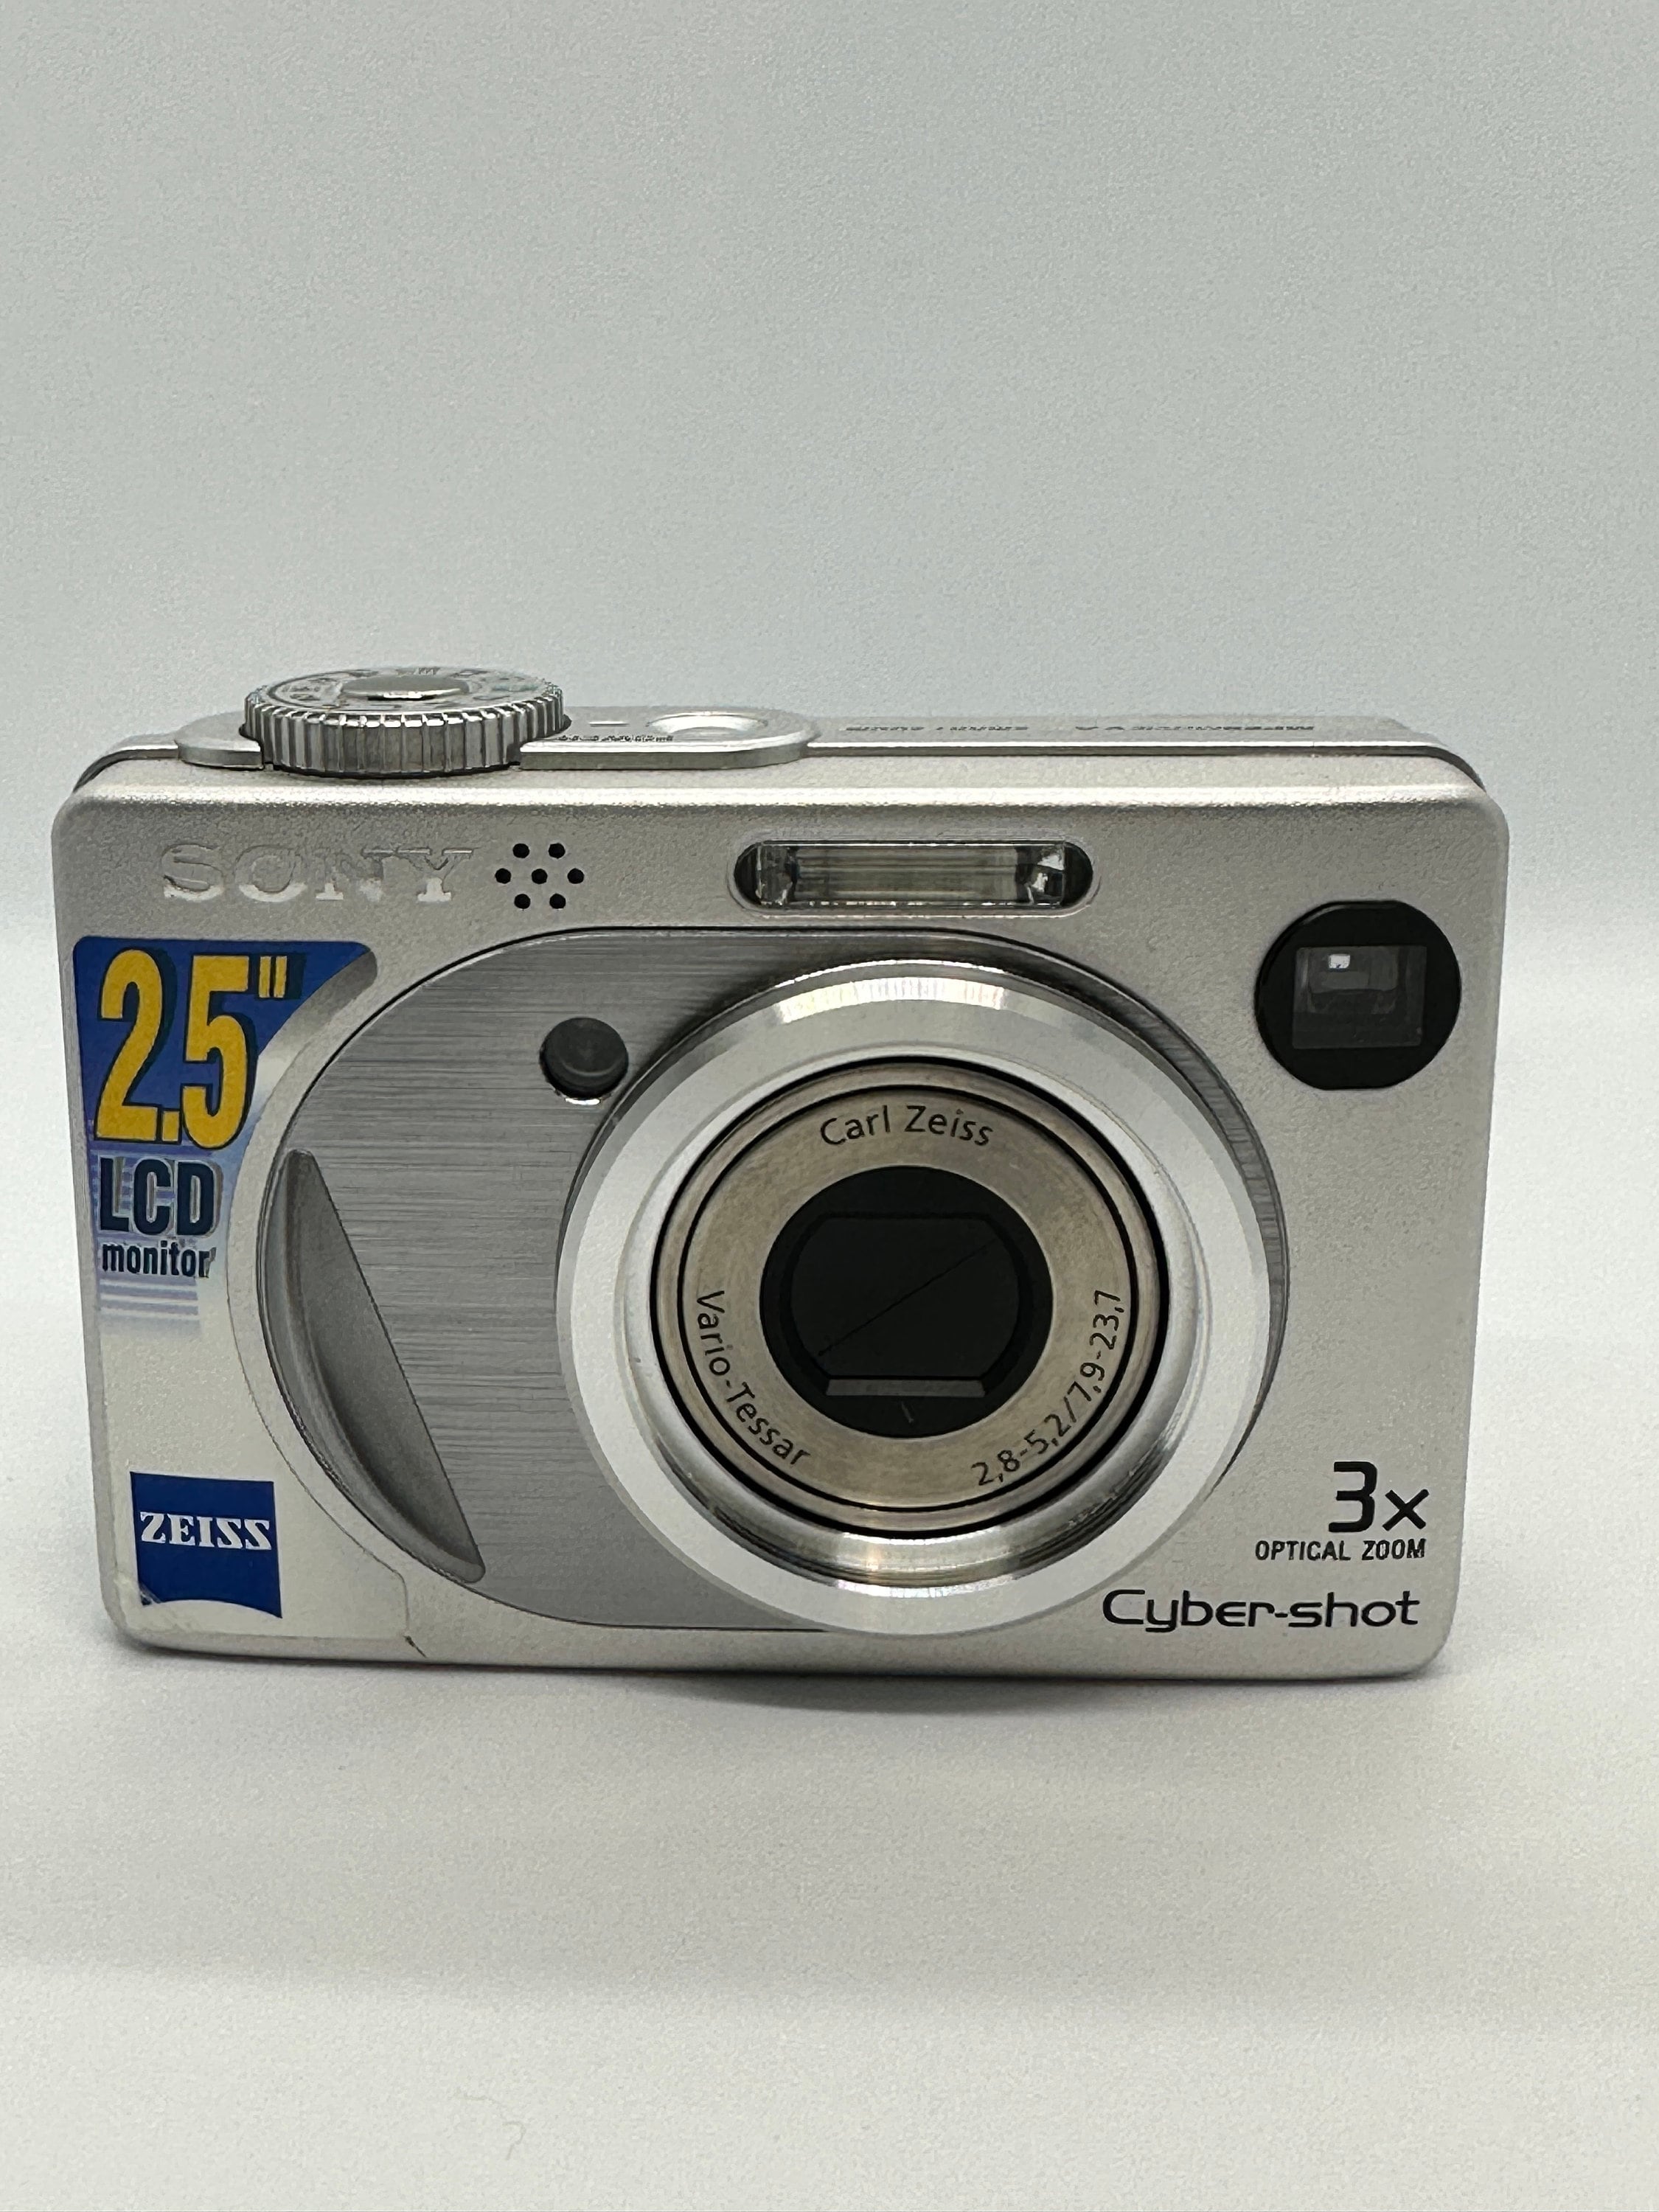 Sony Cyber-shot Dsc-w1 5.1mp Digital Camera Silver 